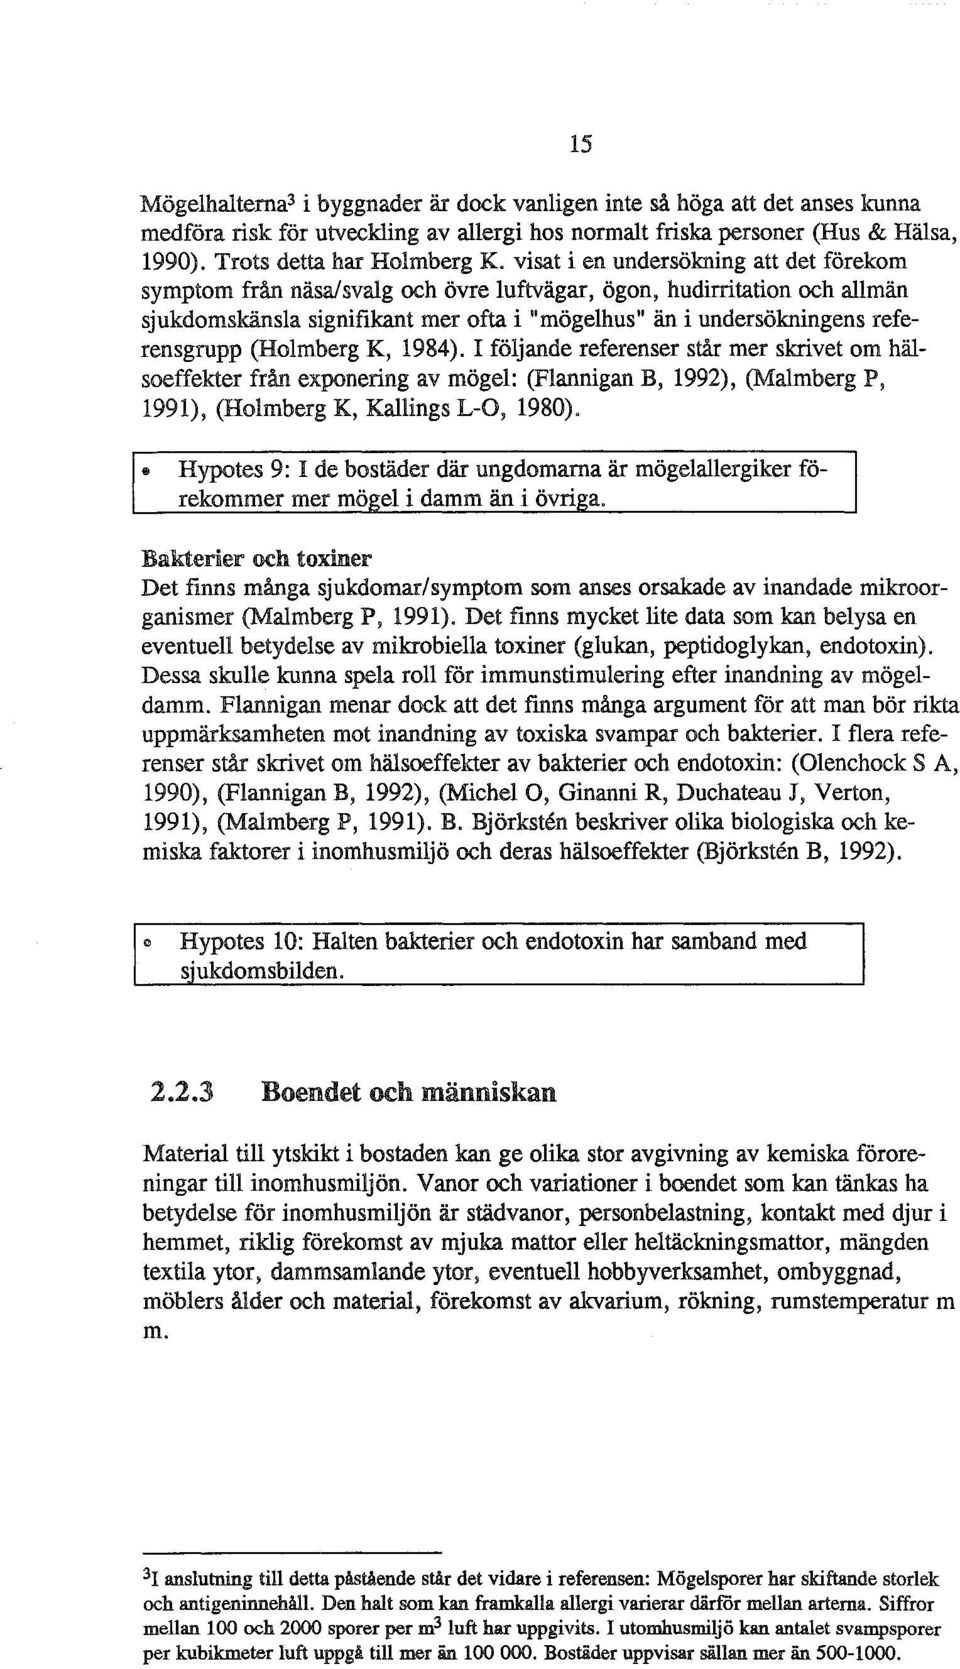 1984). I föjande referenser står mer skrivet m häseffekter från expnering av möge: (Fannigan B, 1992), (Mamberg P, 1991), (Hmberg K, Kaings L-0, 1980).